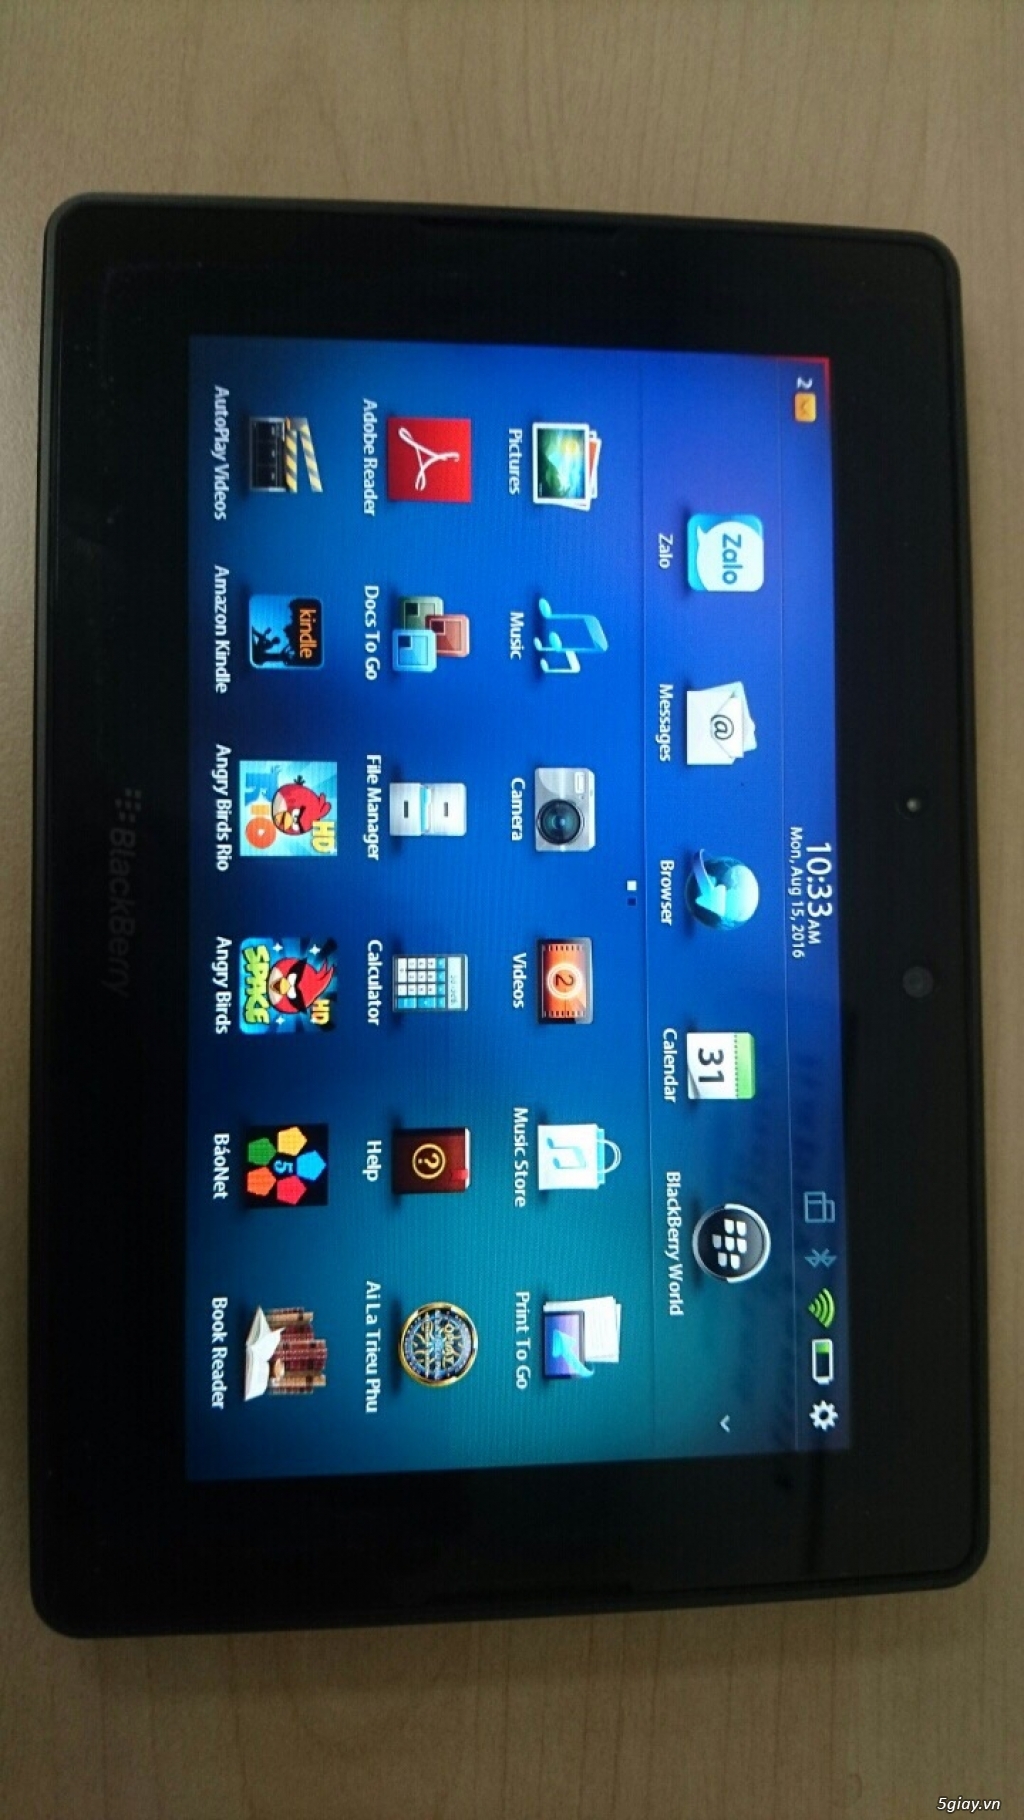 bán Ipad 2 3g 64gb likenew tặng kèm bàn phím bluetooth và MTB BlackBerry - 4